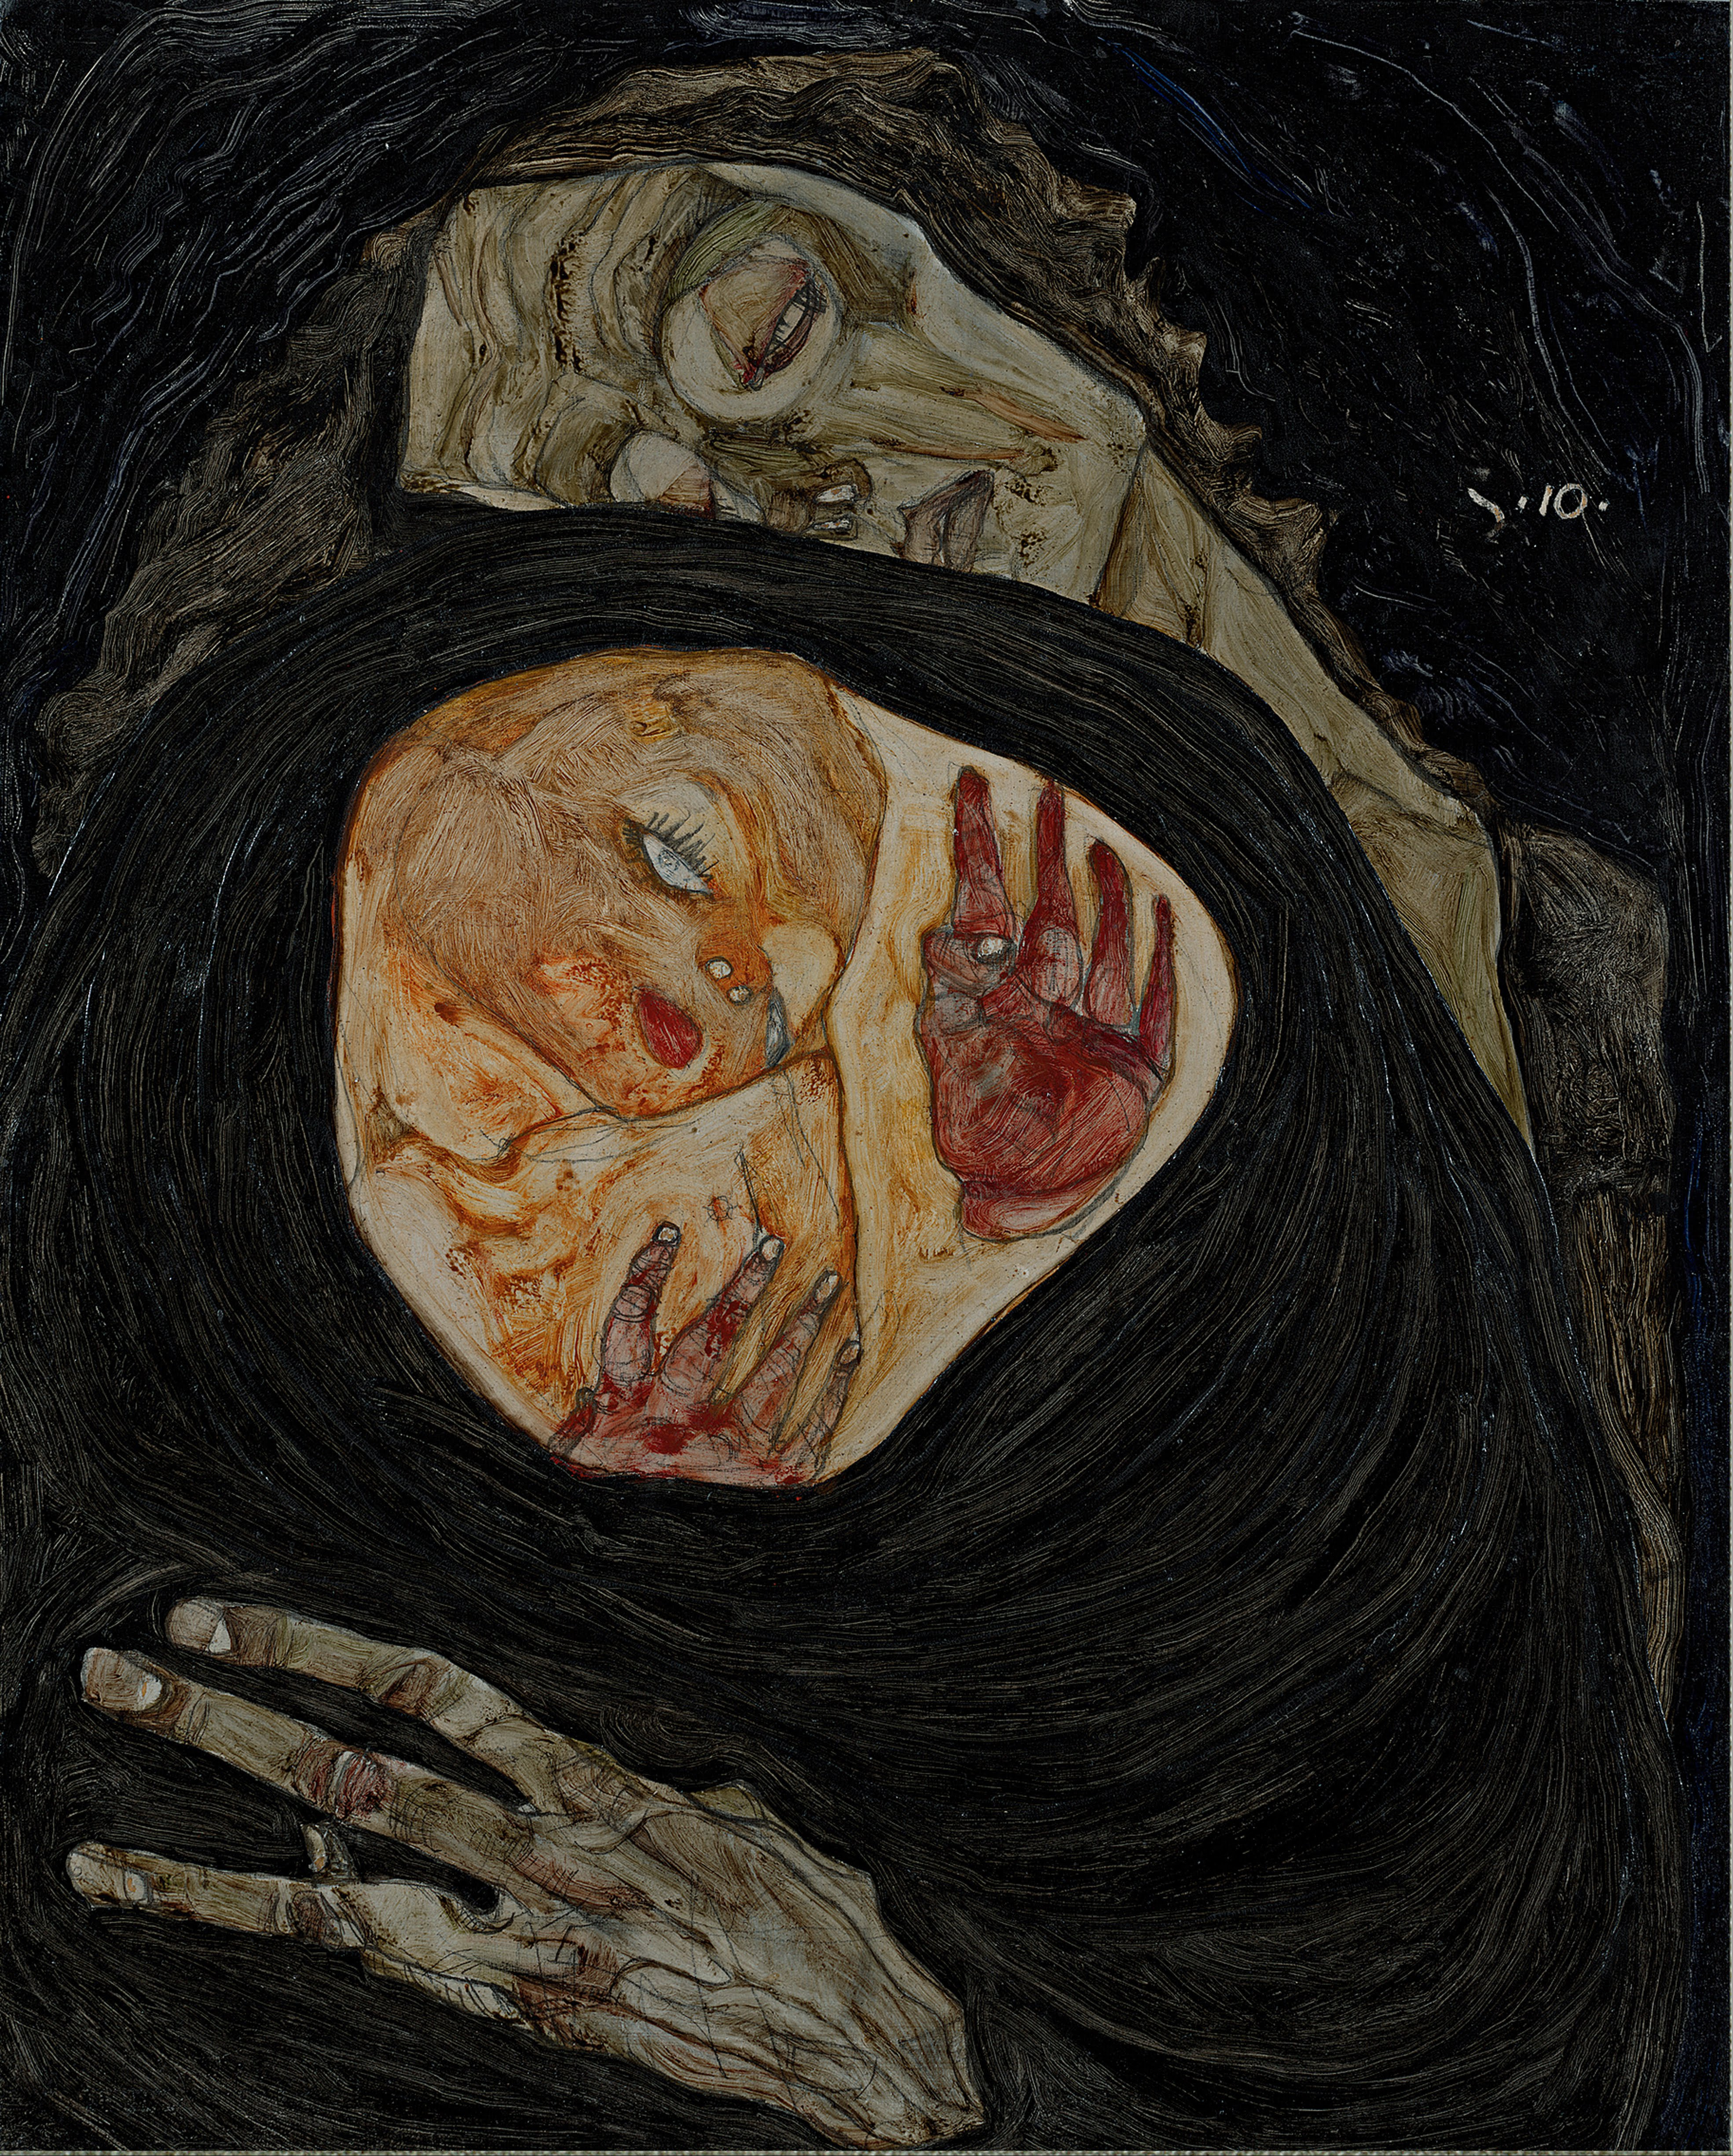 Mrtvá matka by Egon Schiele - cca 1910 - 32 x 25,7 cm 